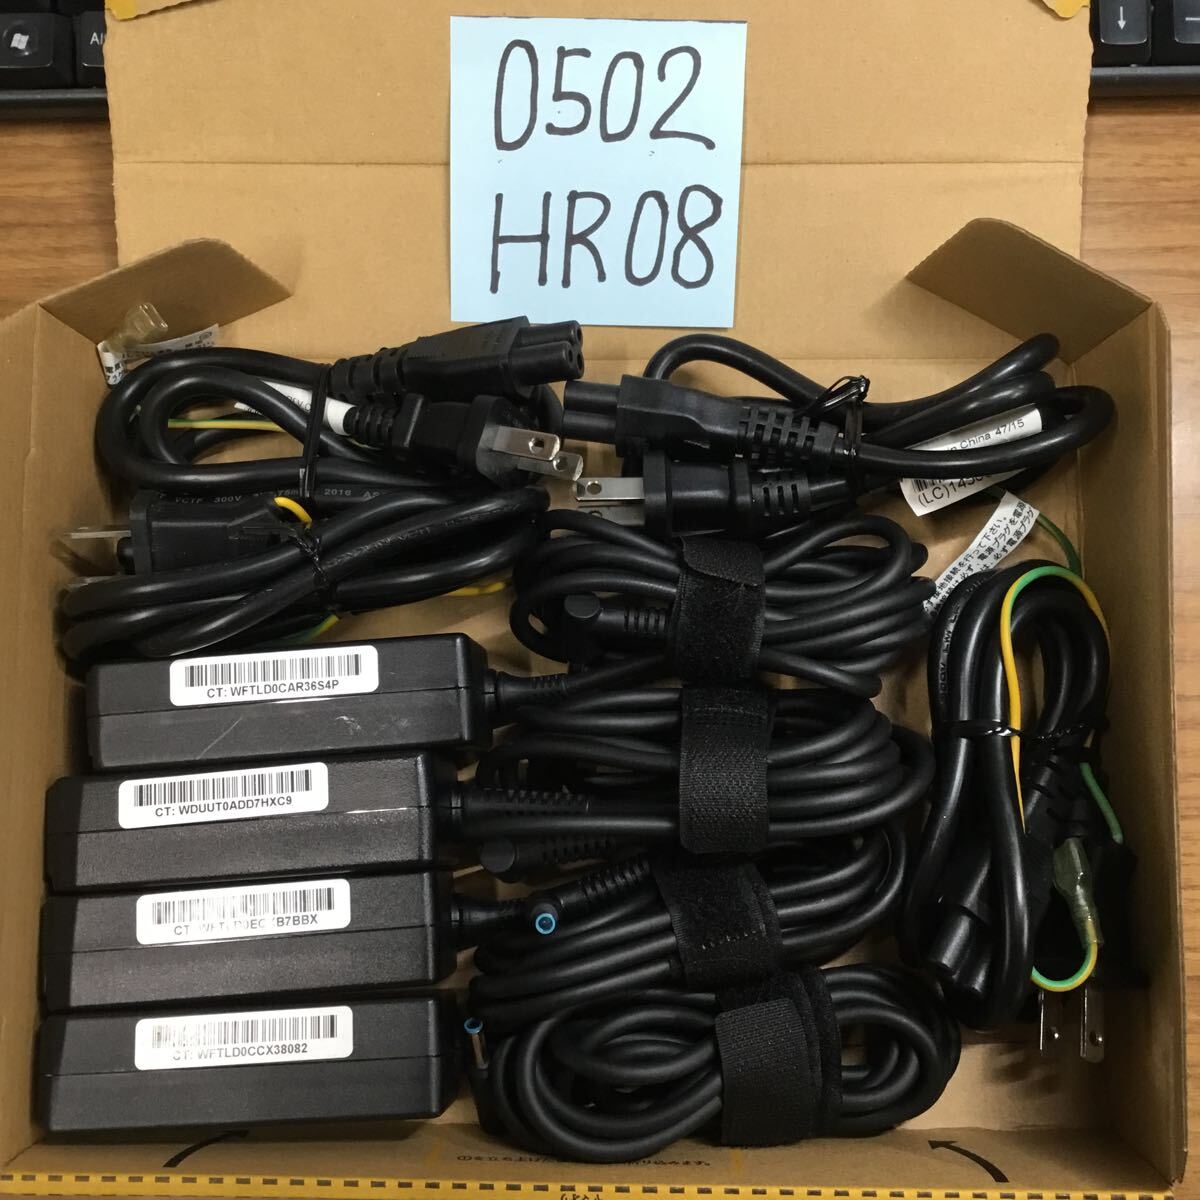 (0502HR08) free shipping / used /HP/HSTNN-DA40/19.5V/2.31A/ original AC adapter 4 piece set 